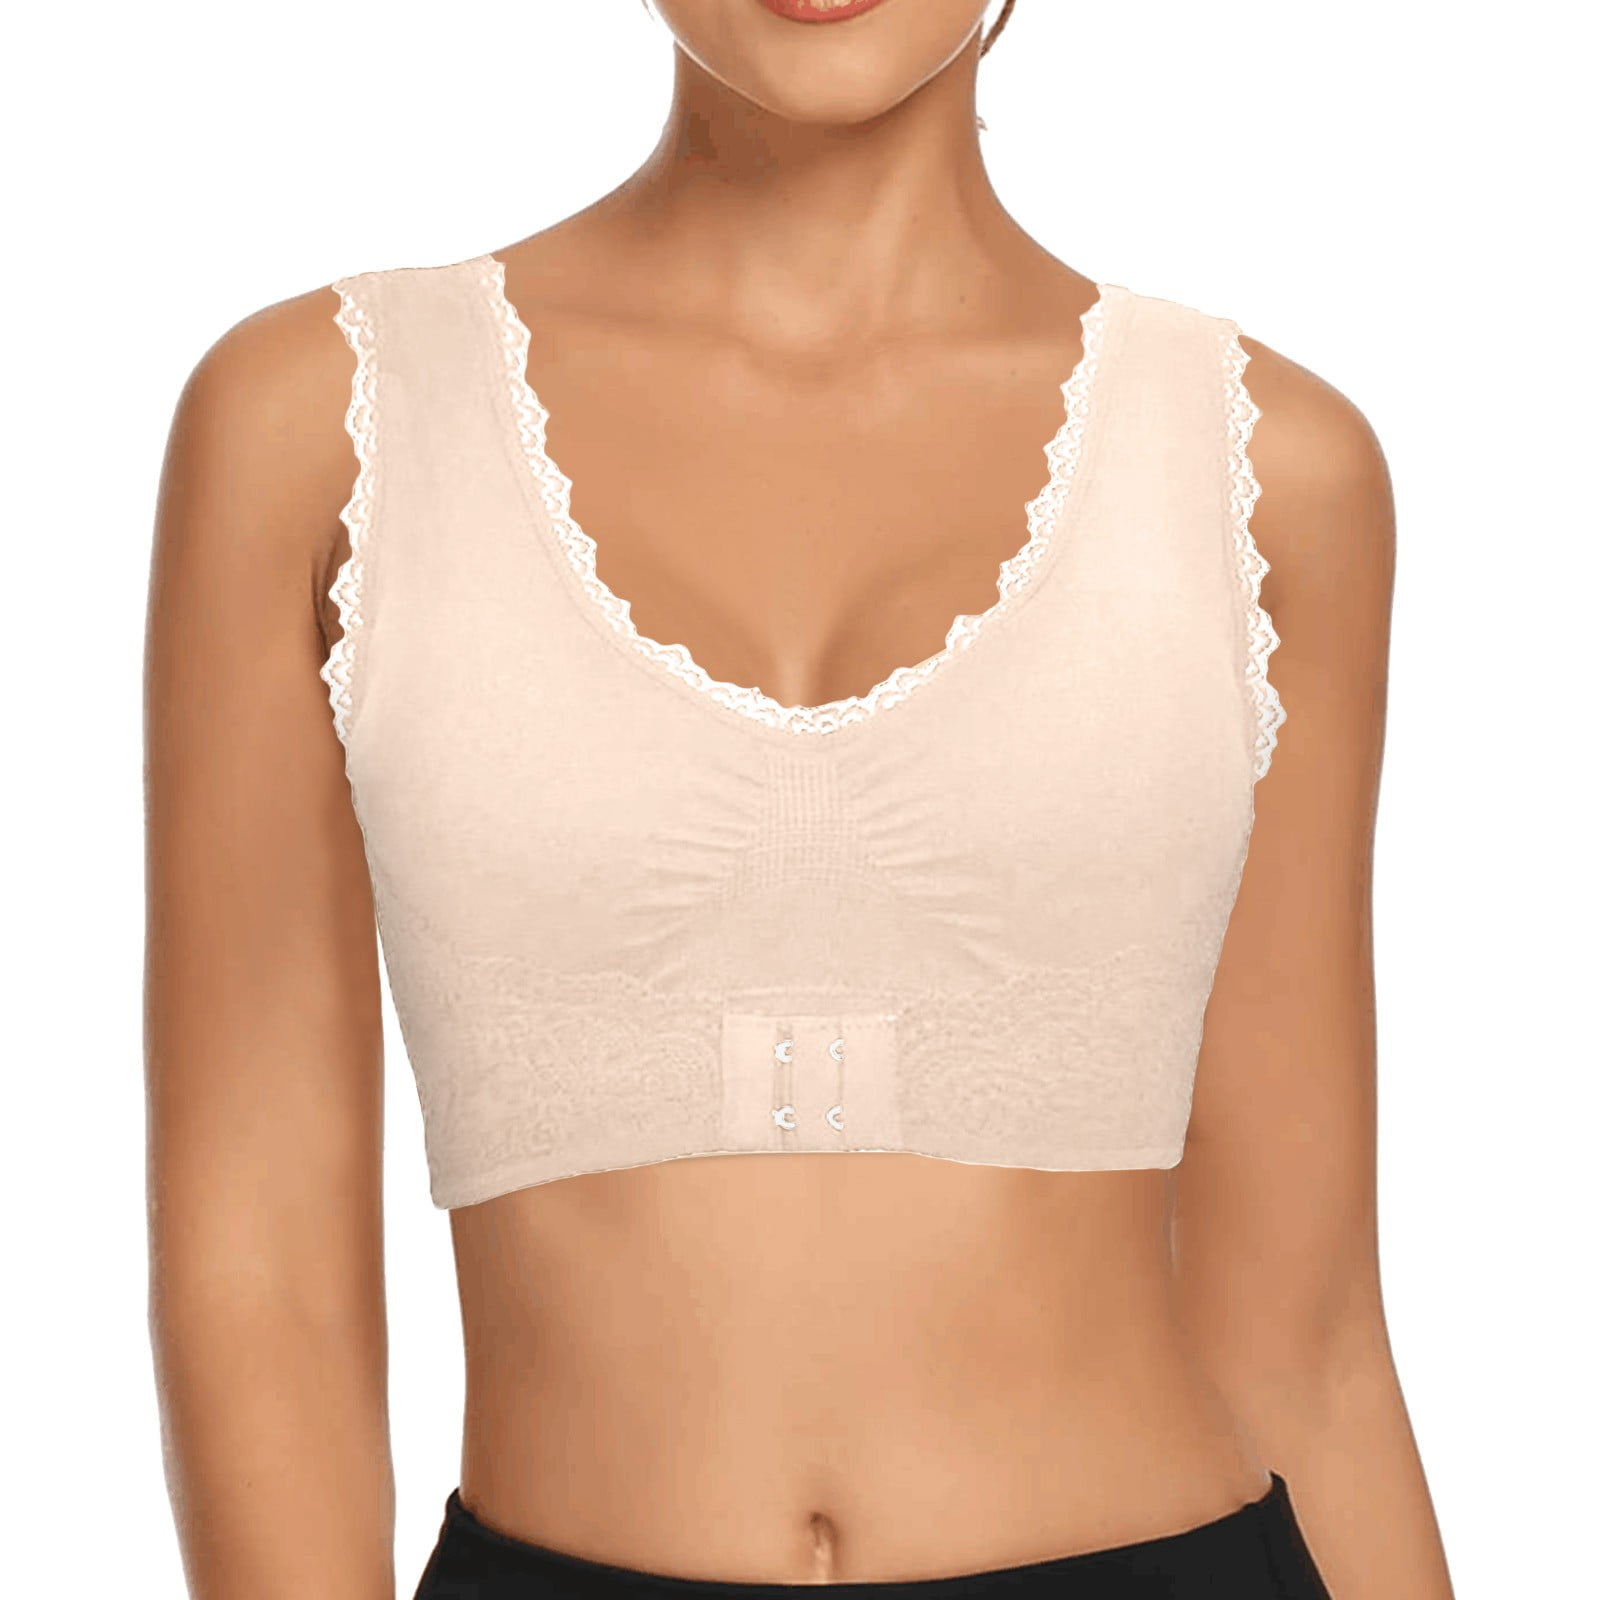 CAICJ98 Lingerie for Women Plus Size Underwire Bra Push Up T Shirt